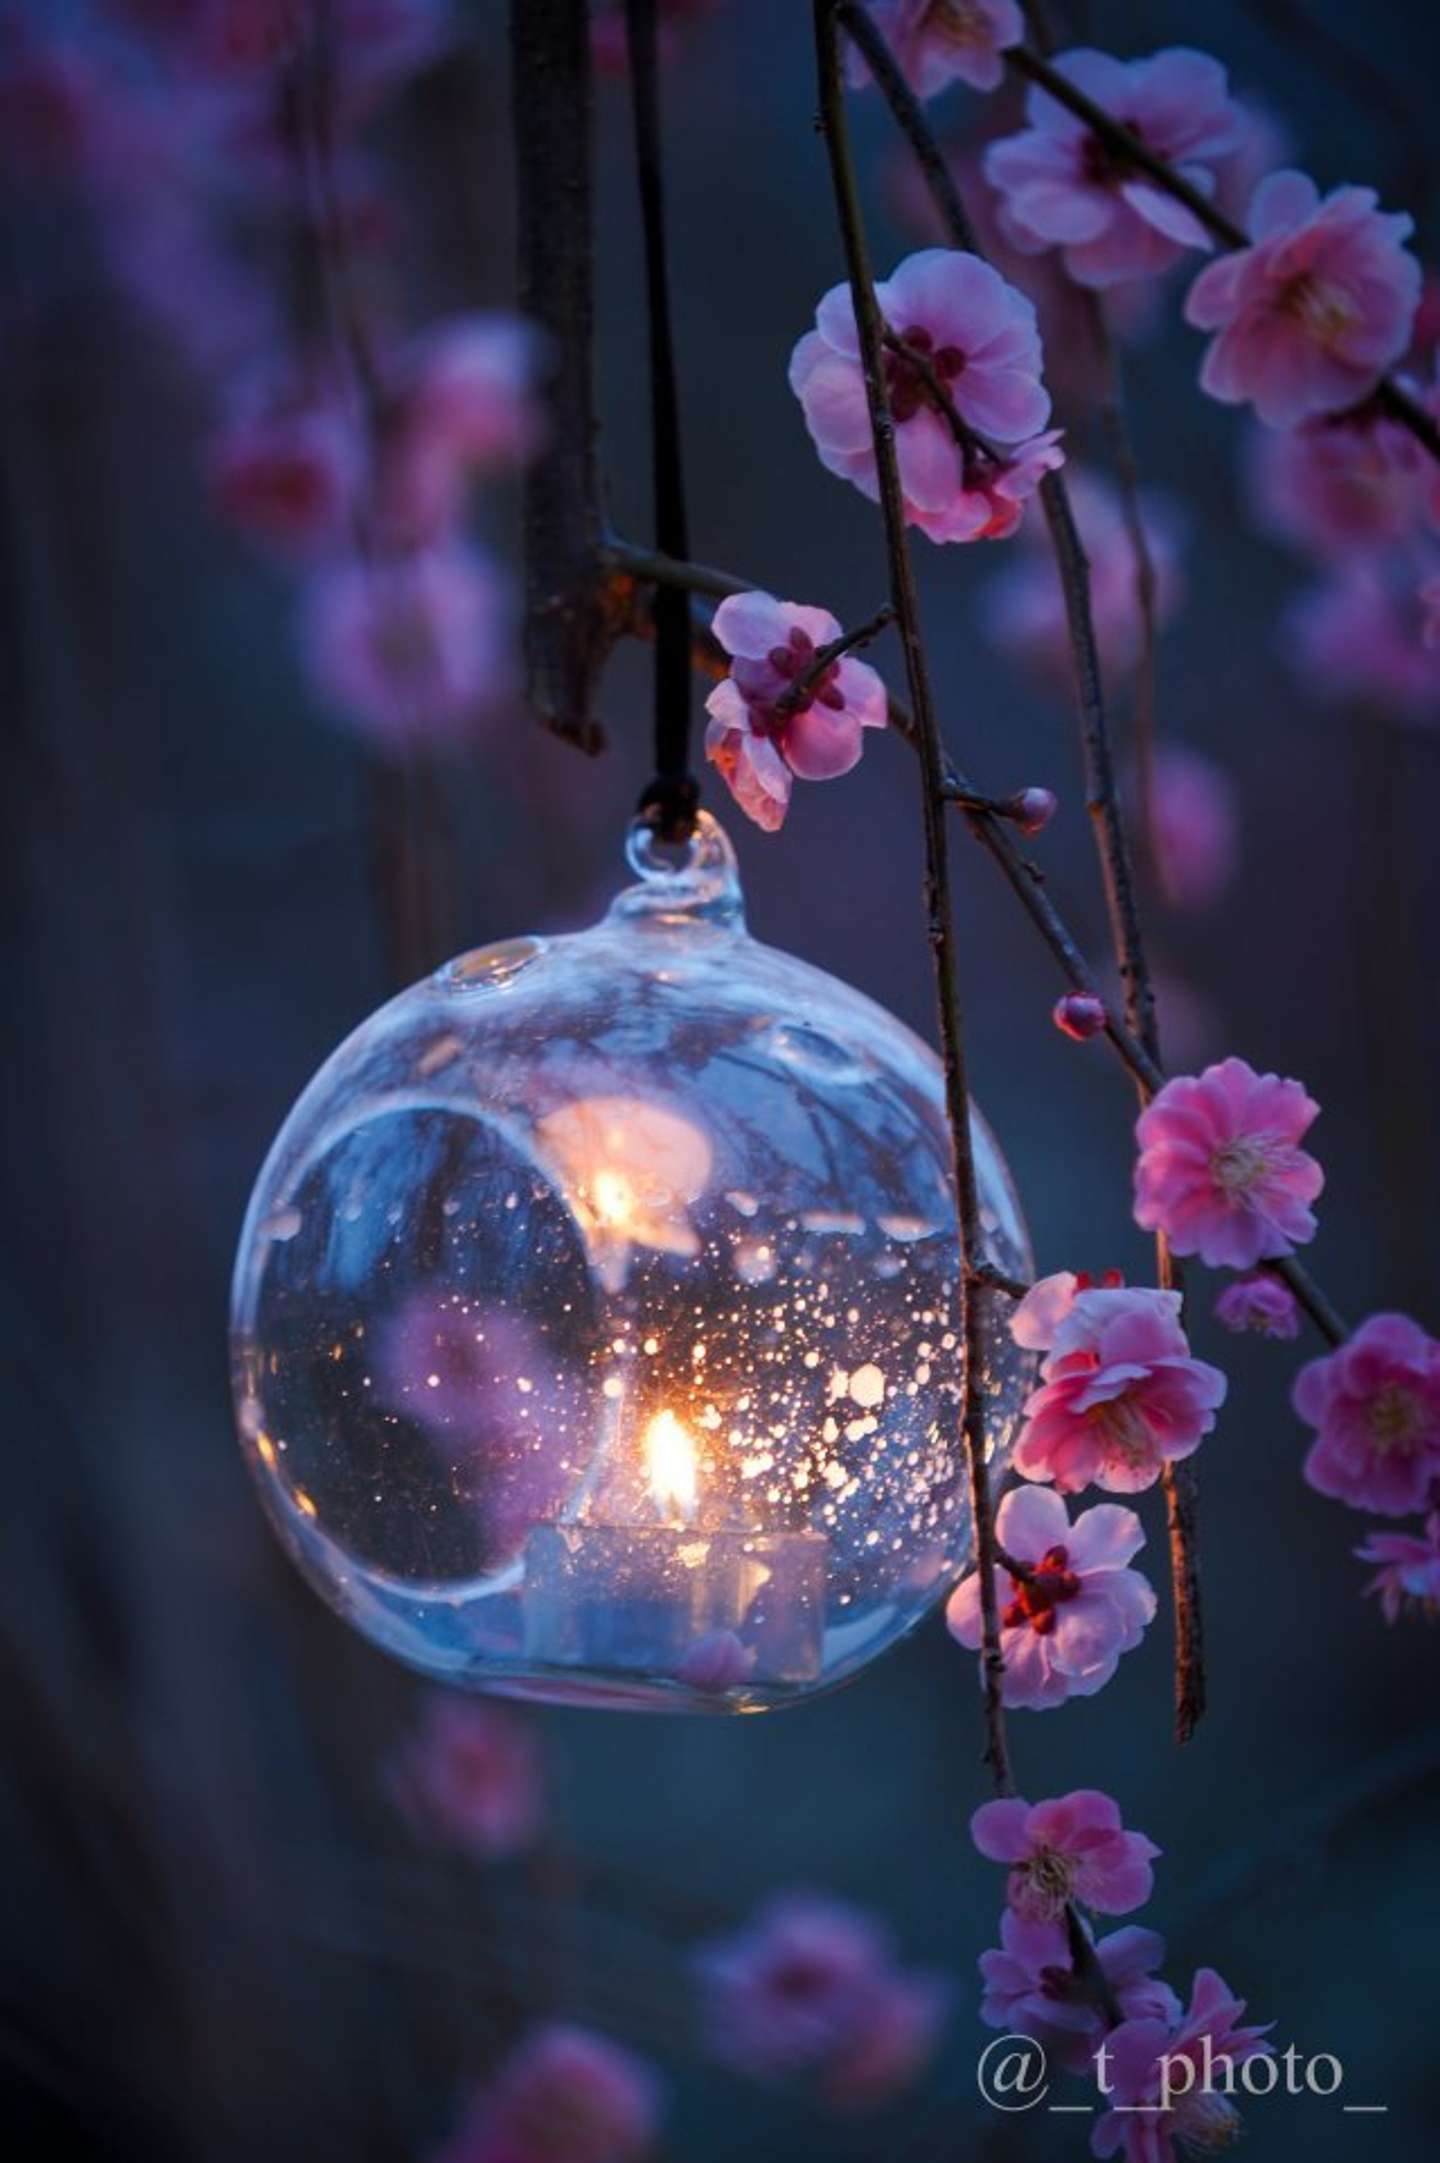 夜空に浮かぶ星みたい 蝋燭と梅の花のツーショットにうっとり 神秘的です めっちゃ綺麗 22年3月26日 エキサイトニュース